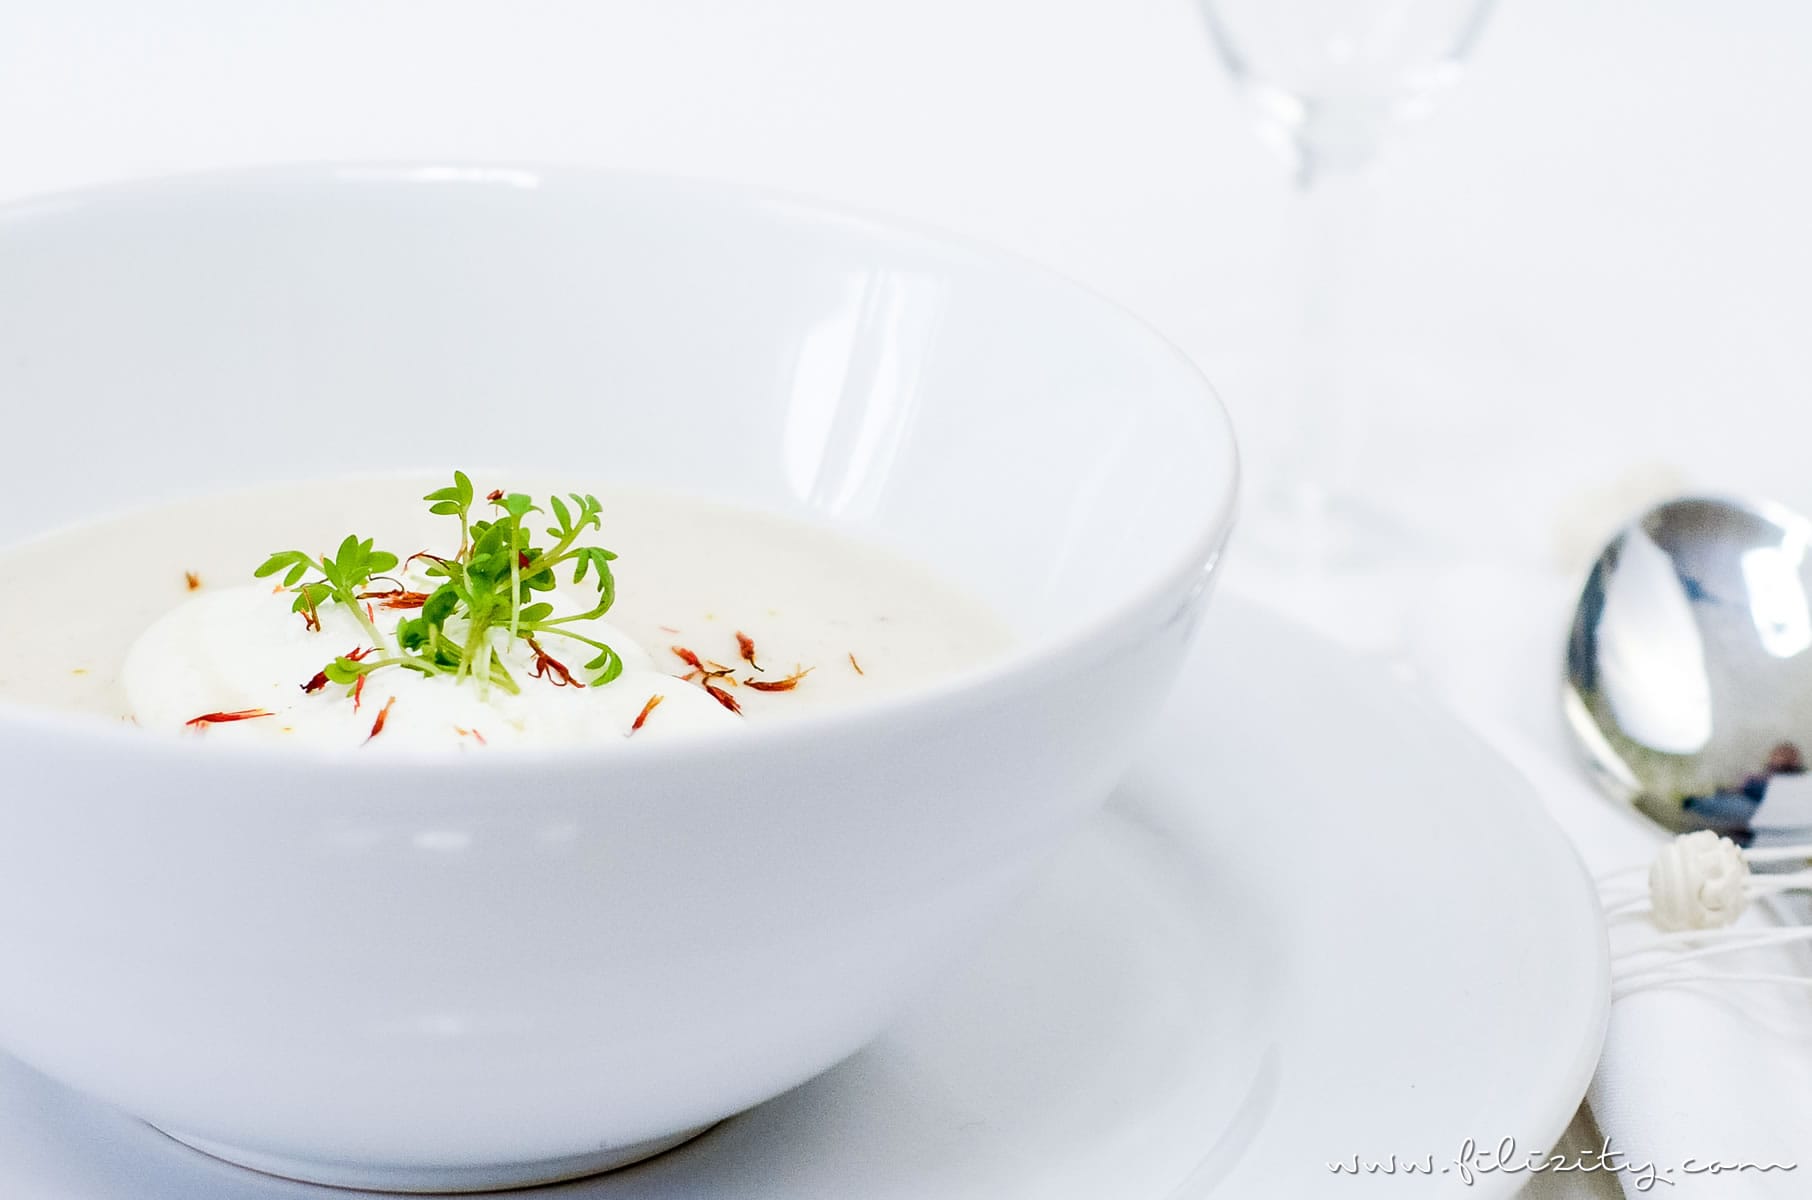 Rezept für orientalische Schwarzwurzel-Cremesuppe | Perfekt für Diner en Blanc | Filizity.com | Food-Blog aus dem Rheinland #vegetarisch #suppe #spargel